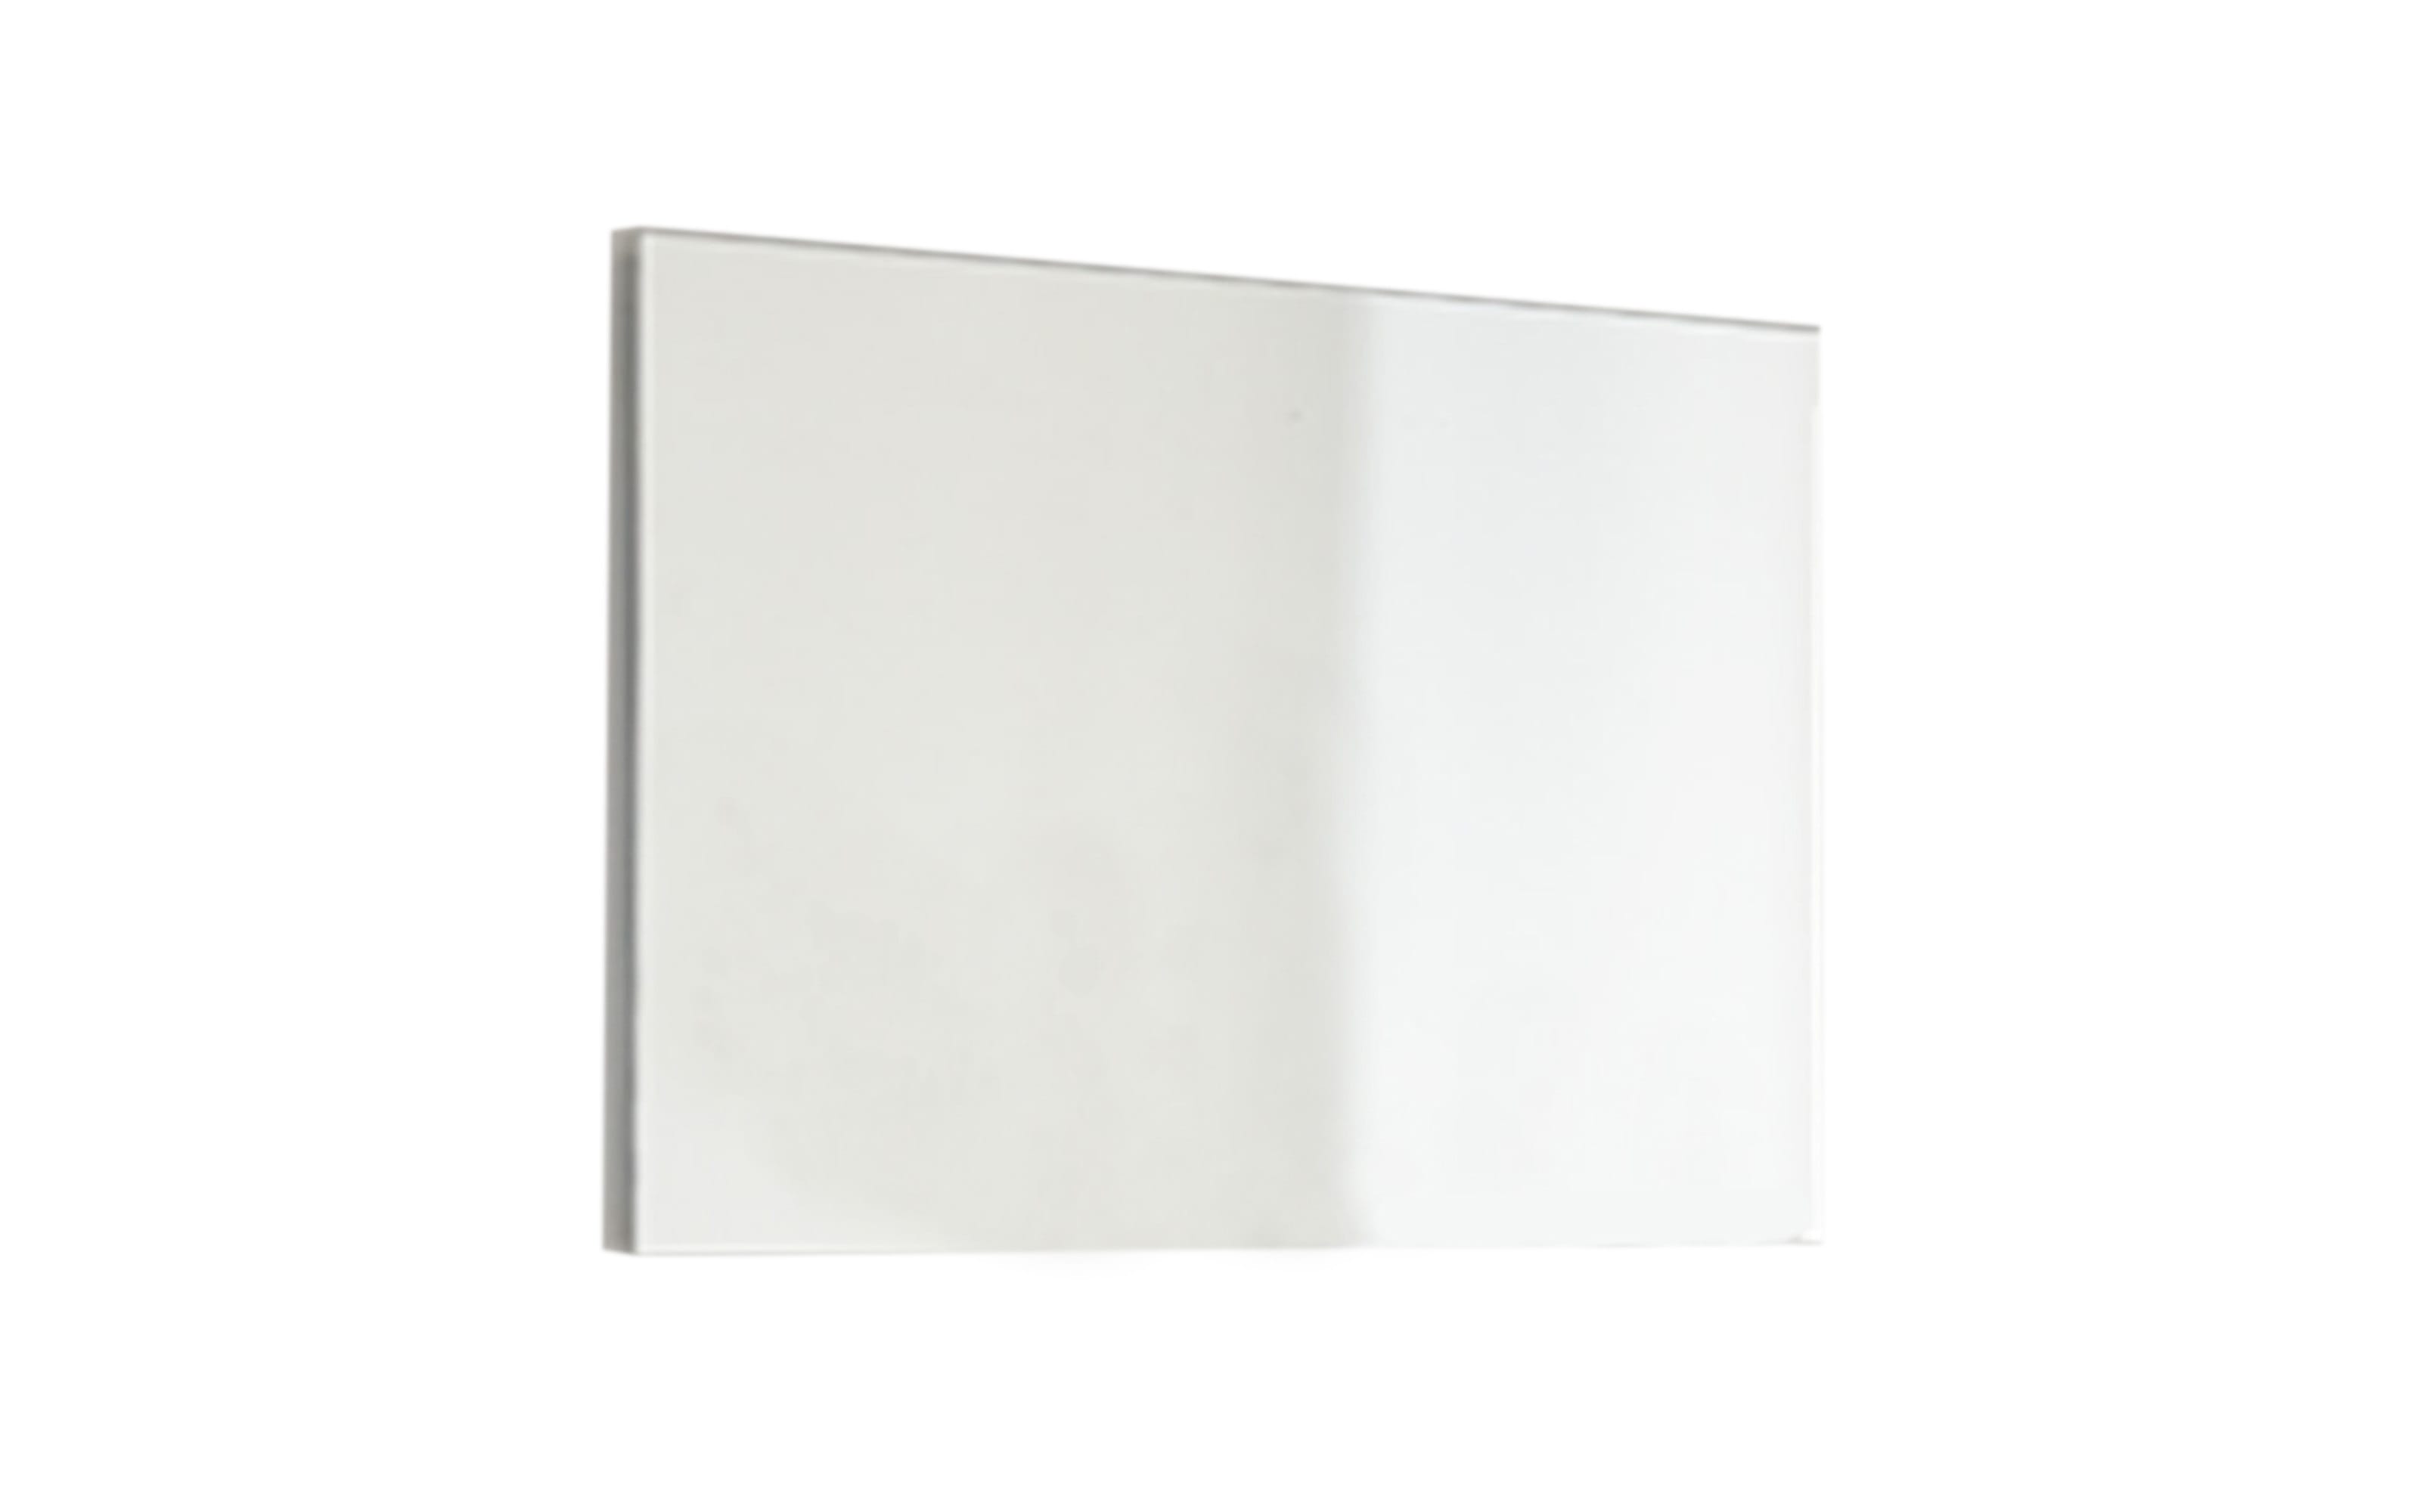 Spiegel 6006 in klar, 88 x 64 cm